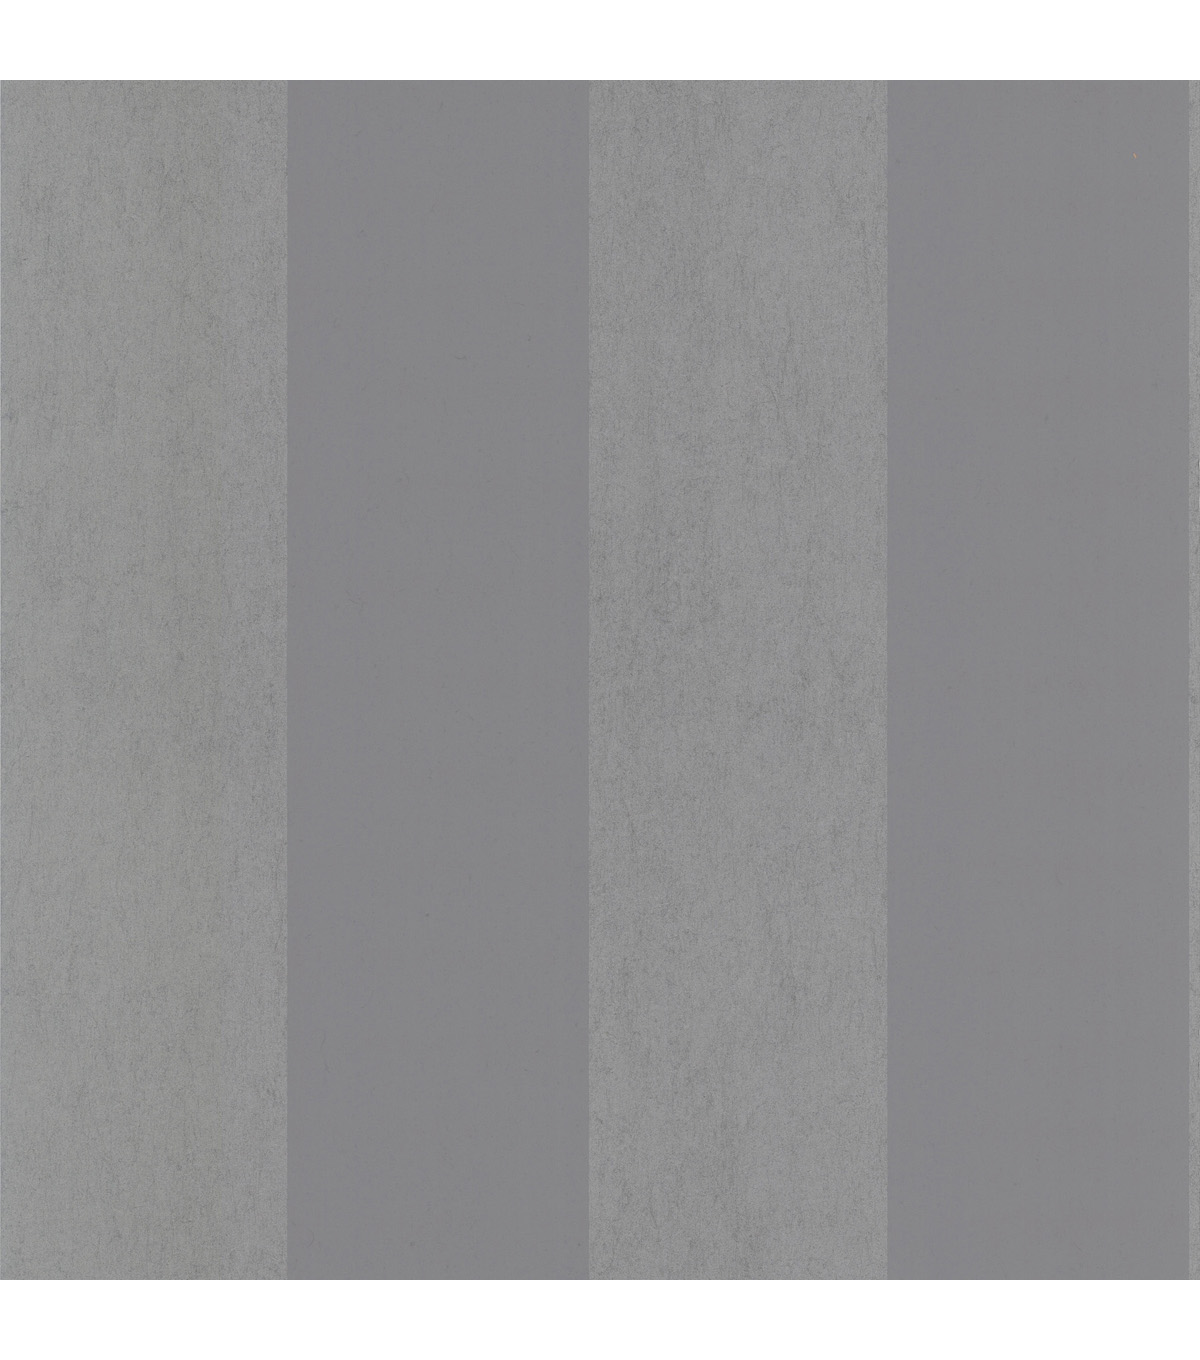 Shimmer Stripe Grey Wallpaper Sampleshimmer